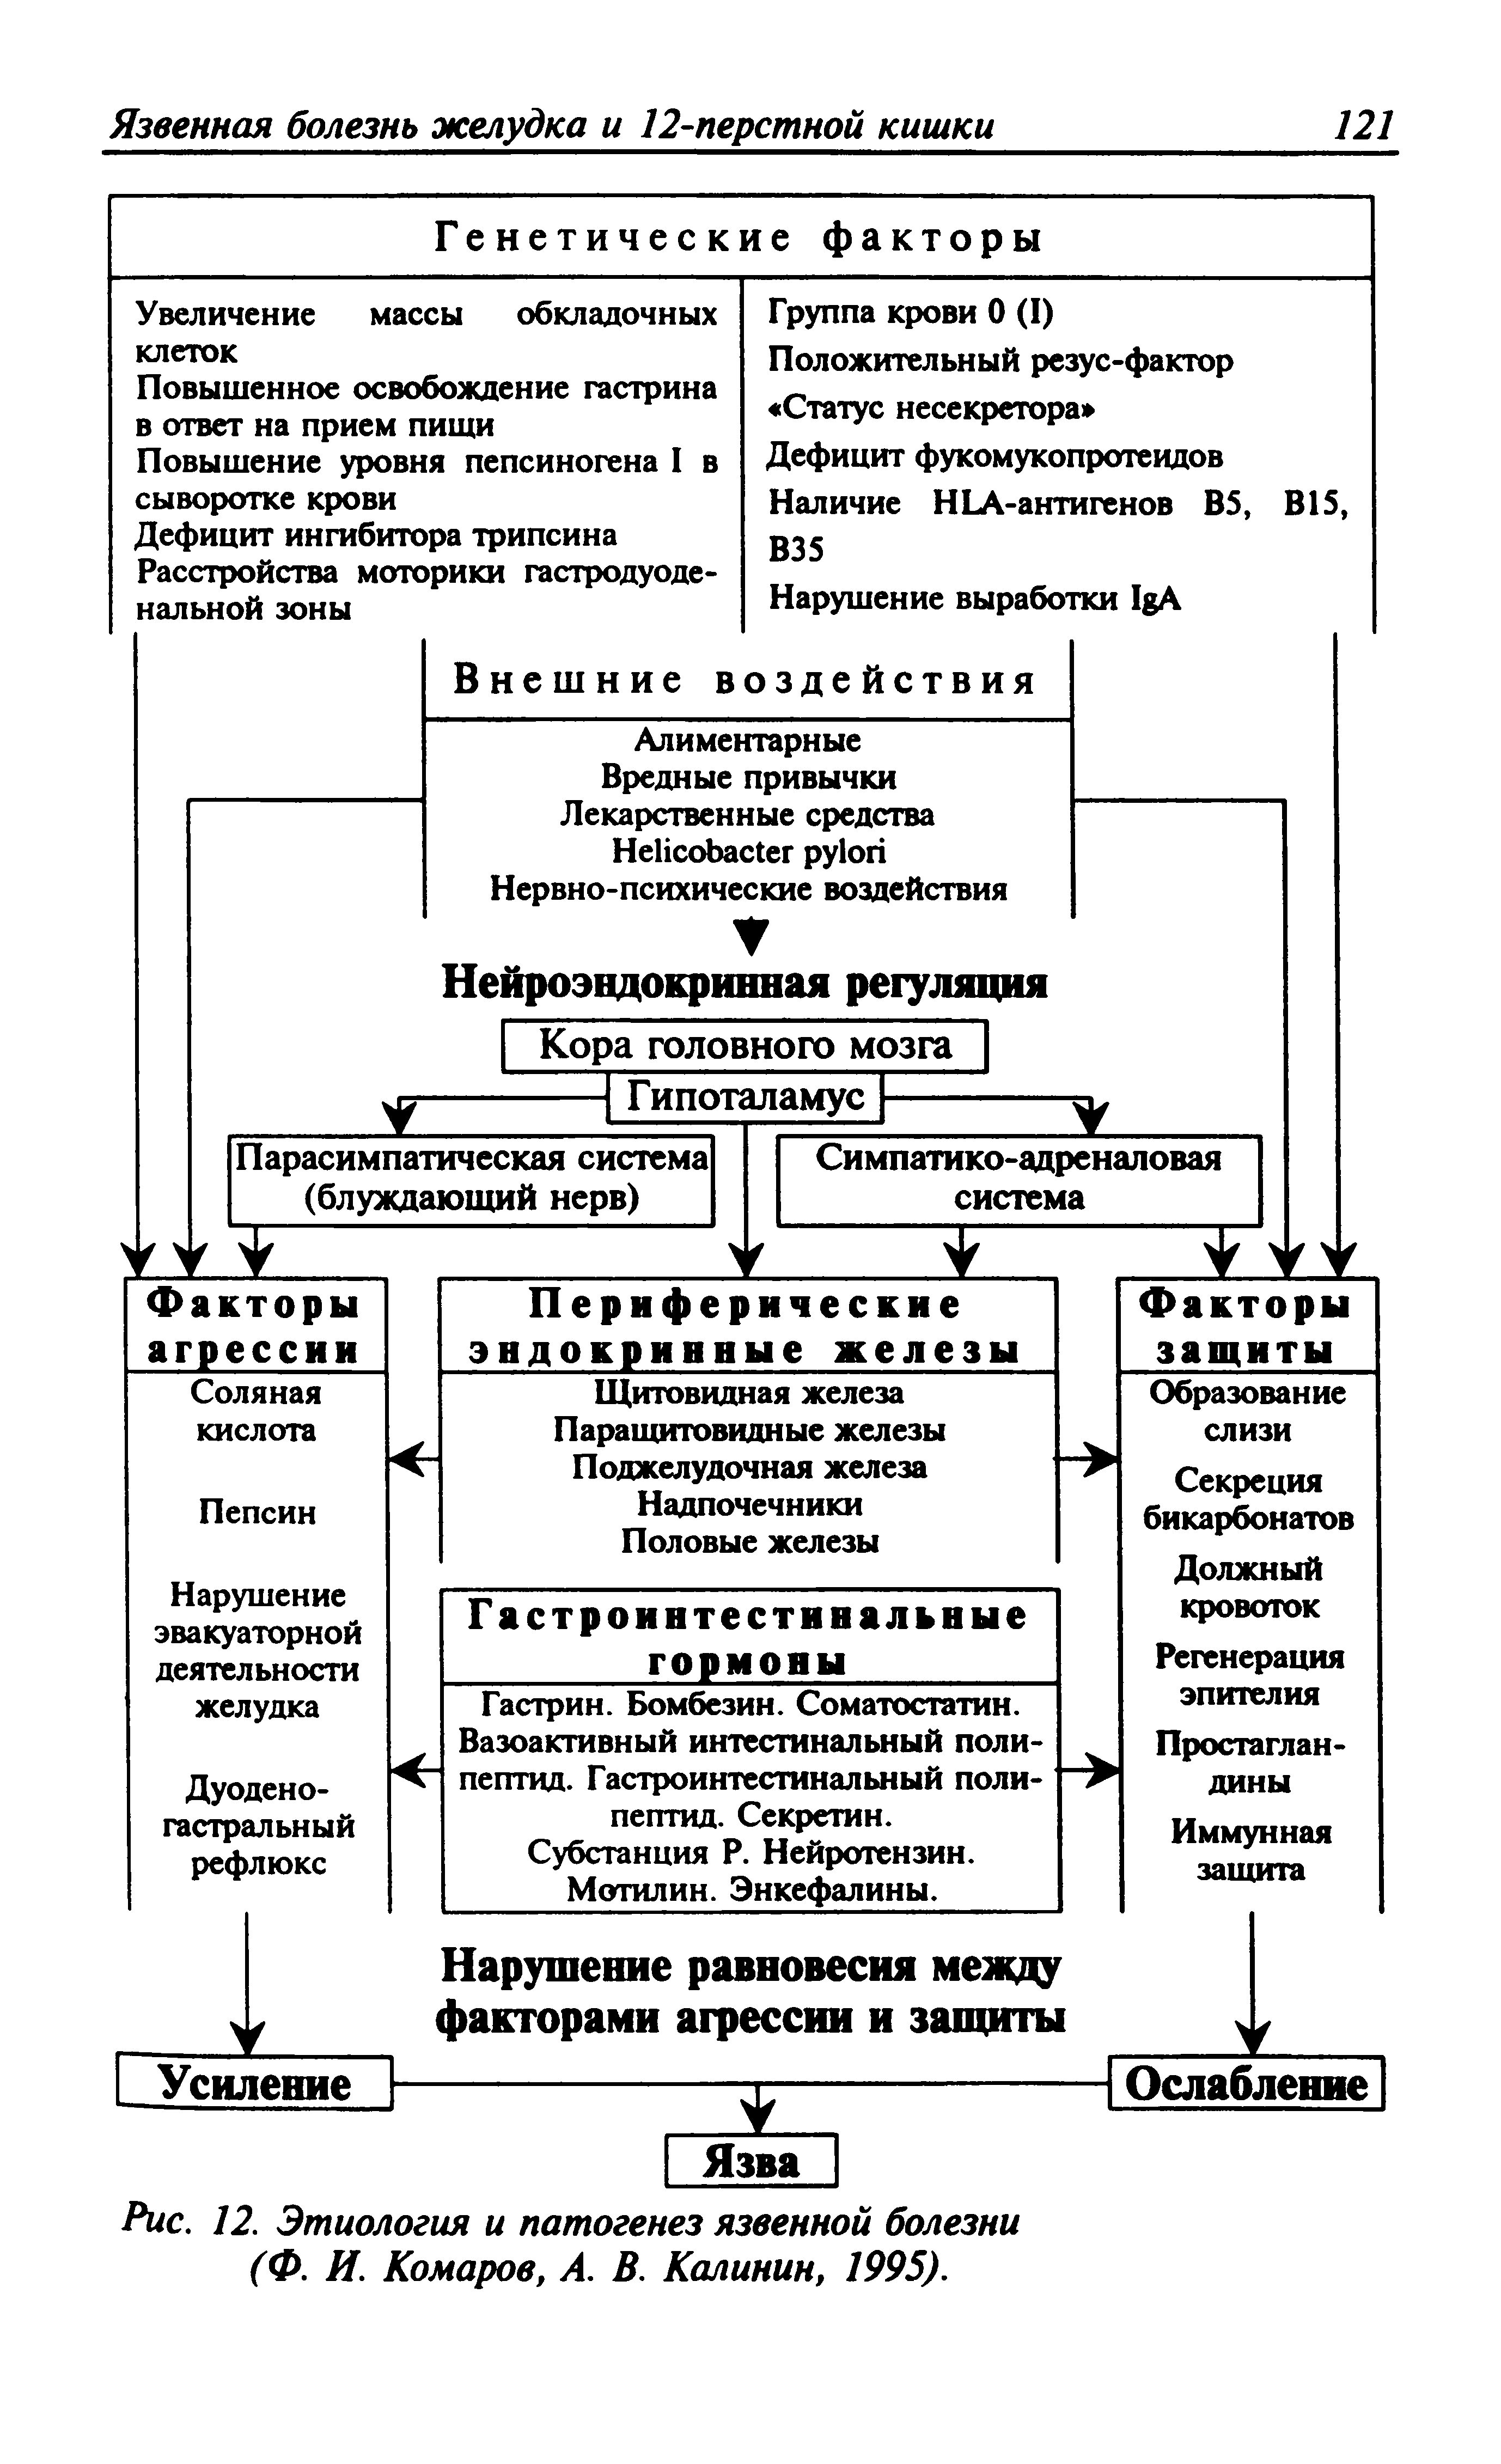 Рис. 12. Этиология и патогенез язвенной болезни (Ф. И. Комаров, А. В. Калинин, 1995).